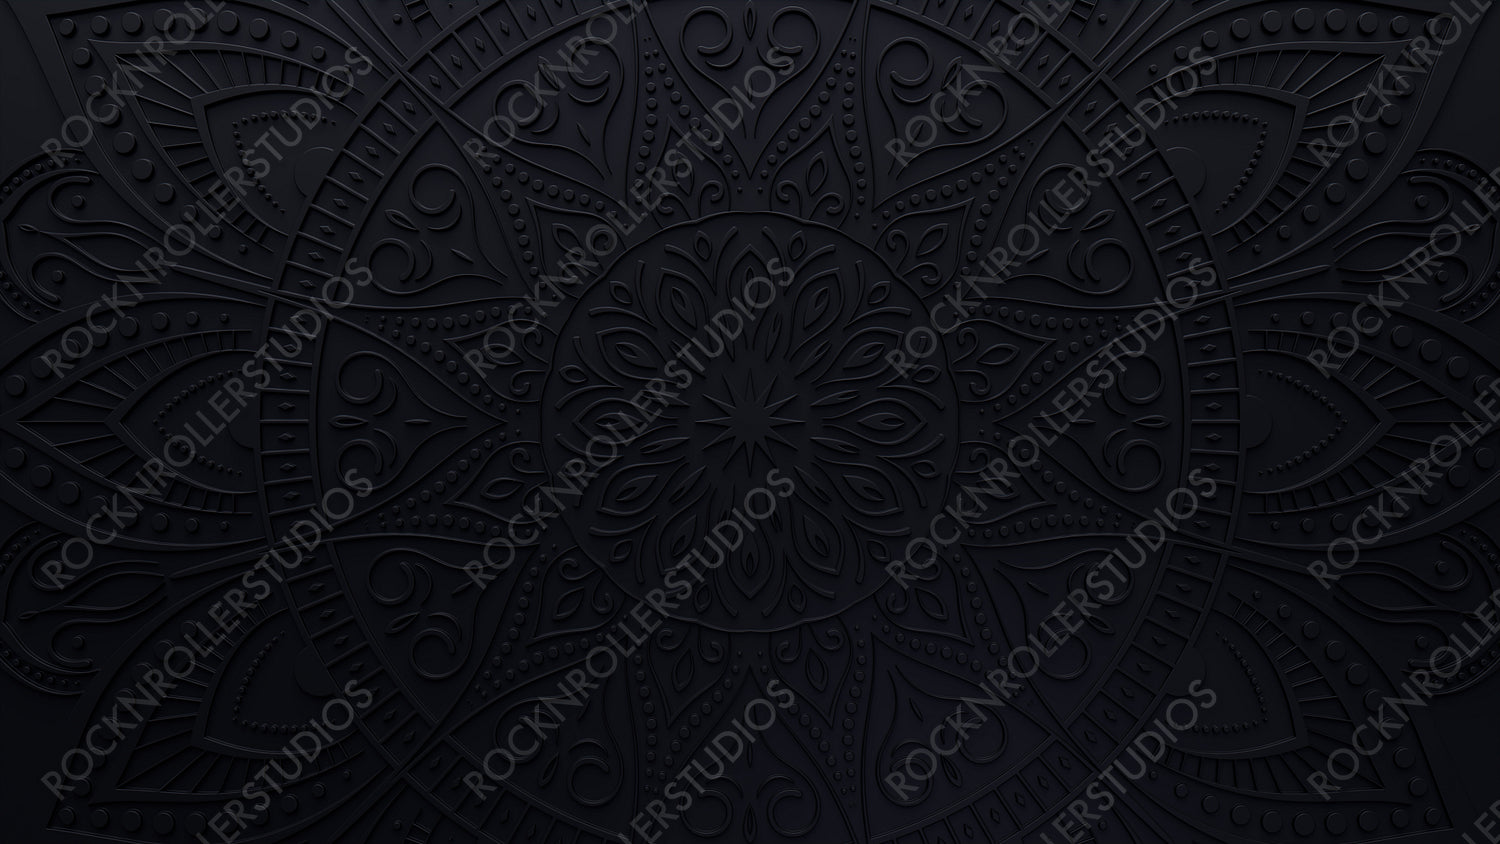 Diwali Celebration Background, with Black 3D Mandala Pattern. 3D Render.